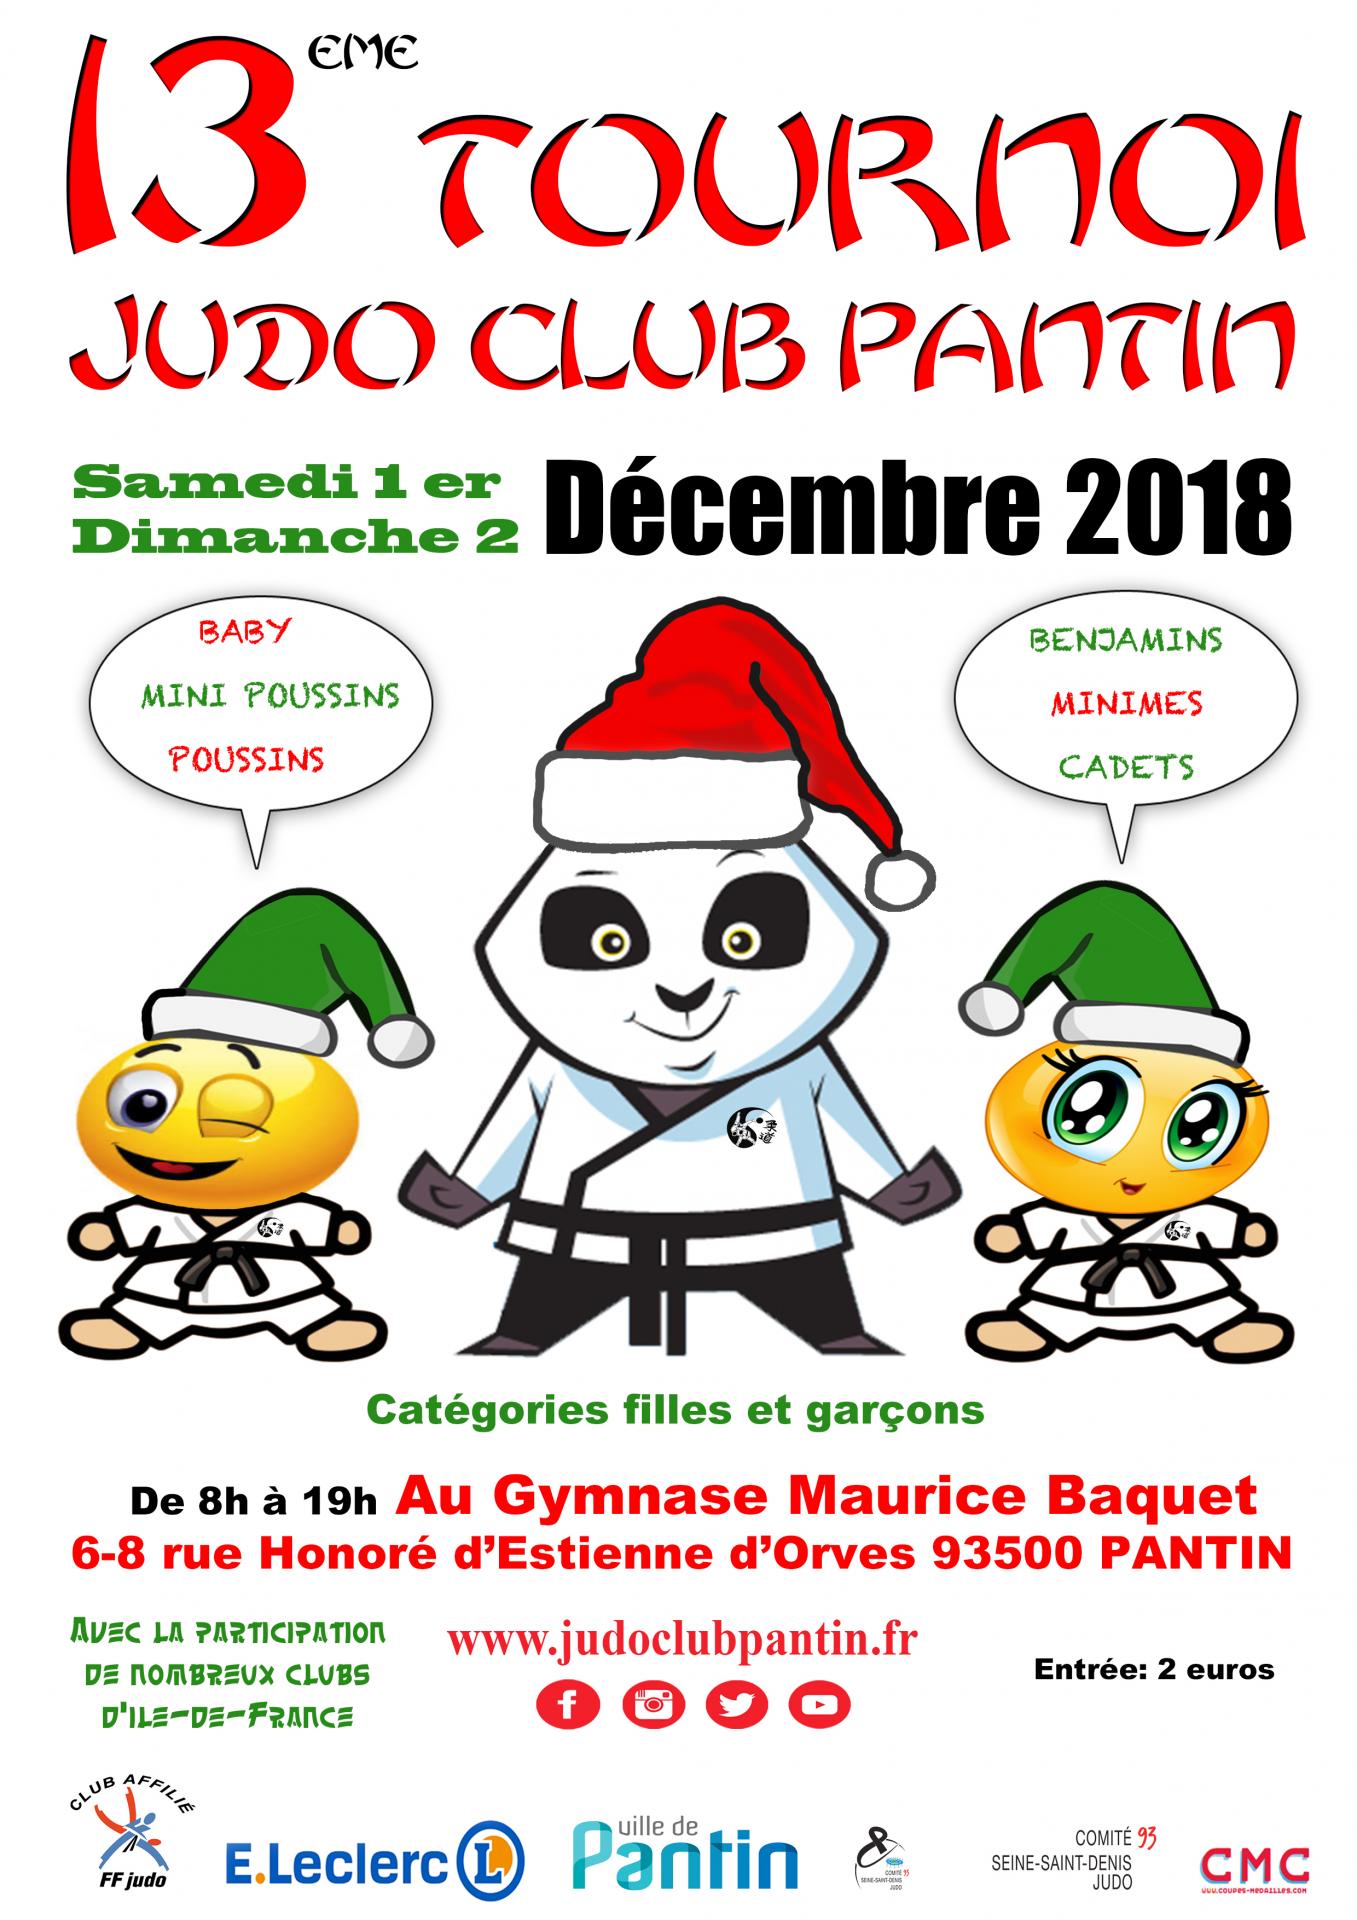 13 eme tournoi a4 2018 judo club pantin